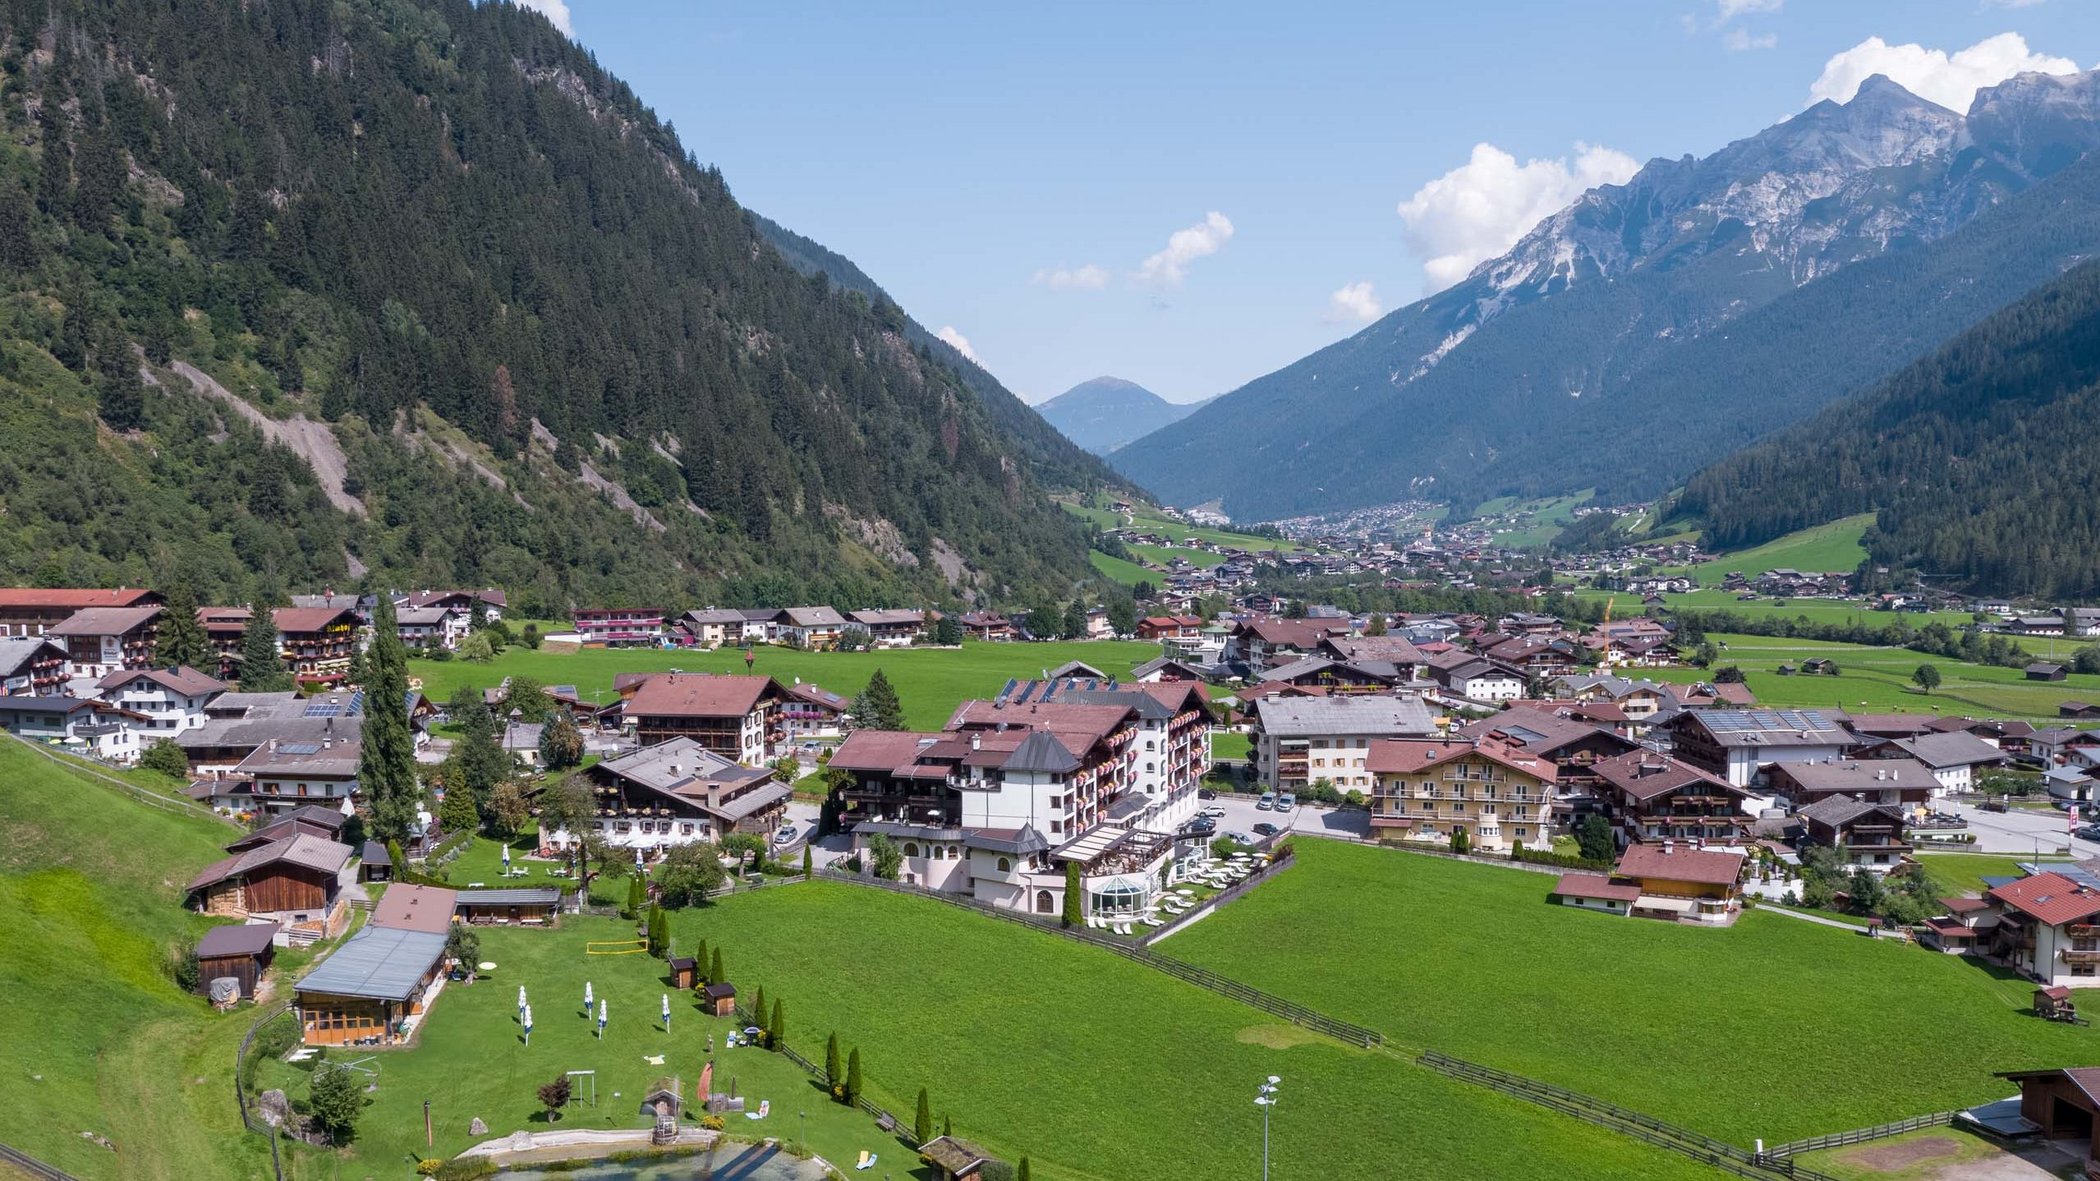 Come arrivare al nostro hotel in Tirolo, Austria?